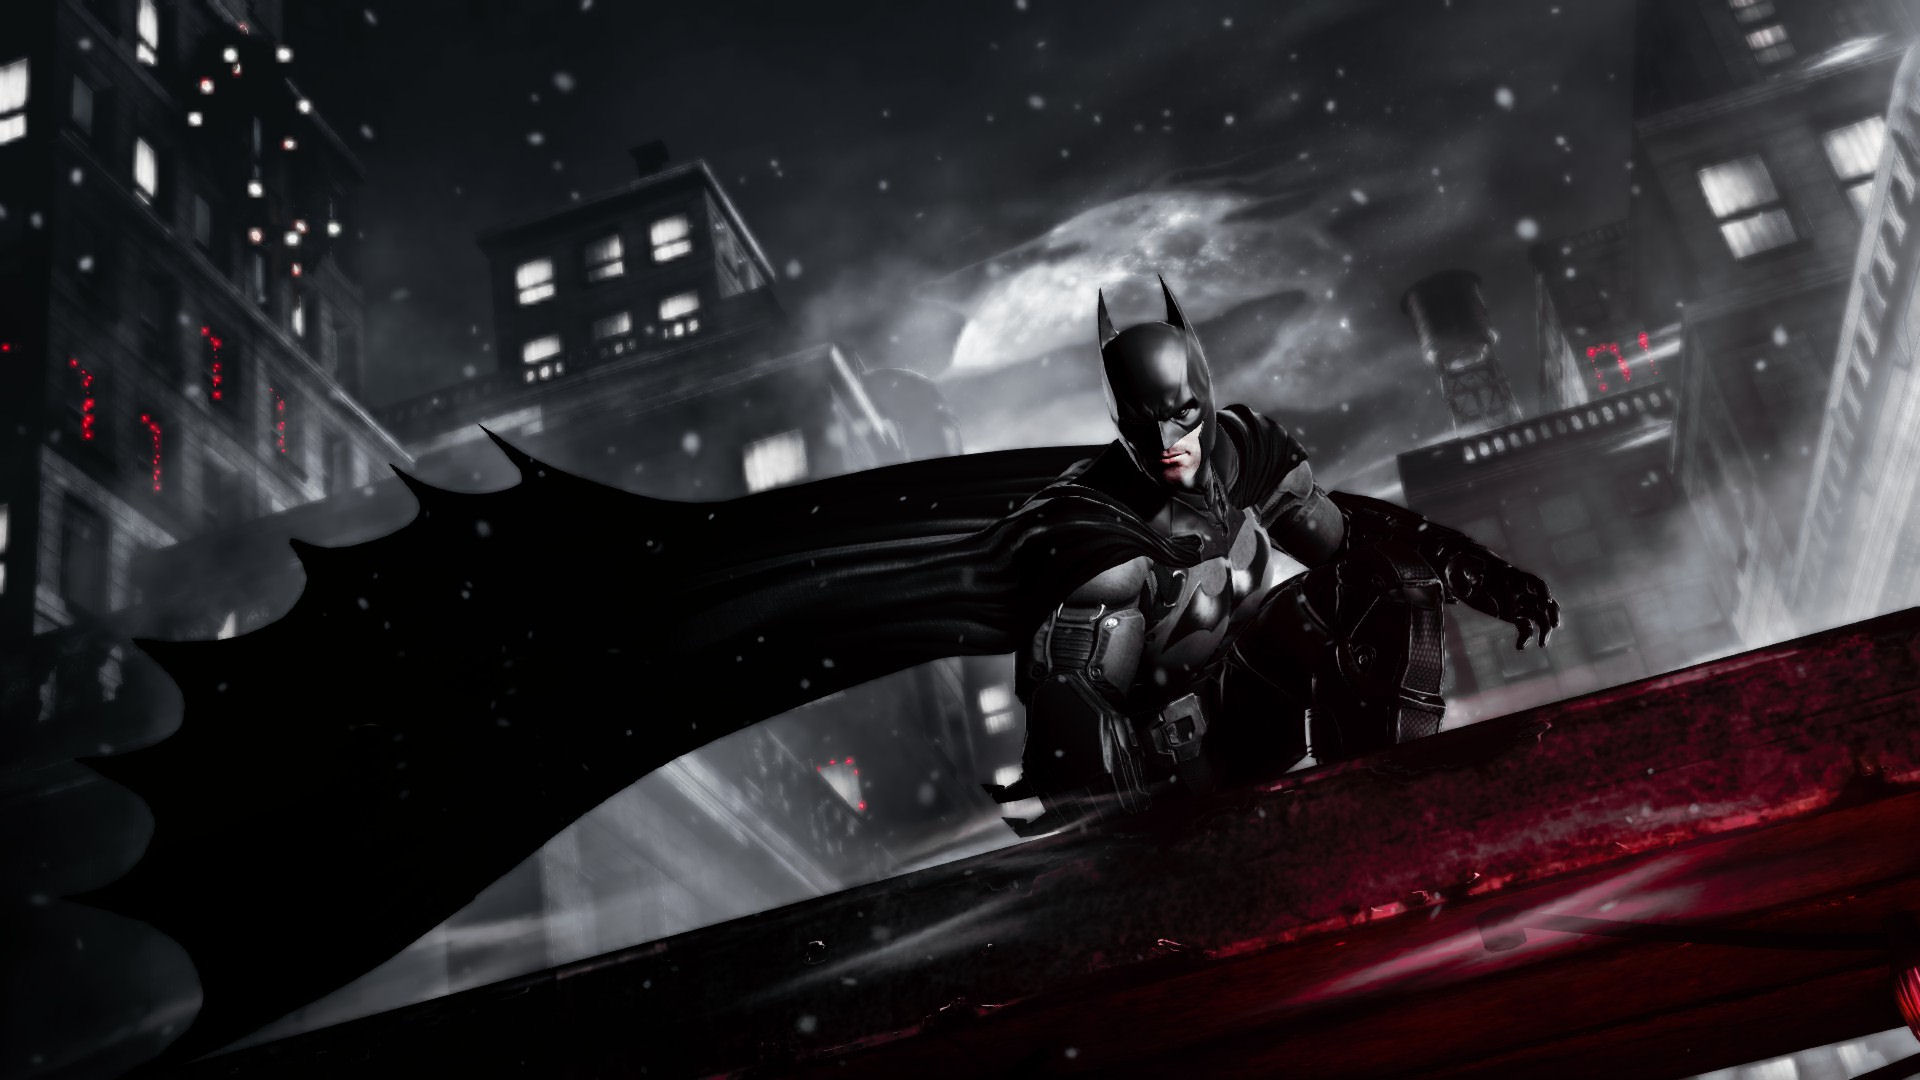 Скачать обои бесплатно Бэтмен: Летопись Аркхема, Бэтмен, Видеоигры картинка на рабочий стол ПК